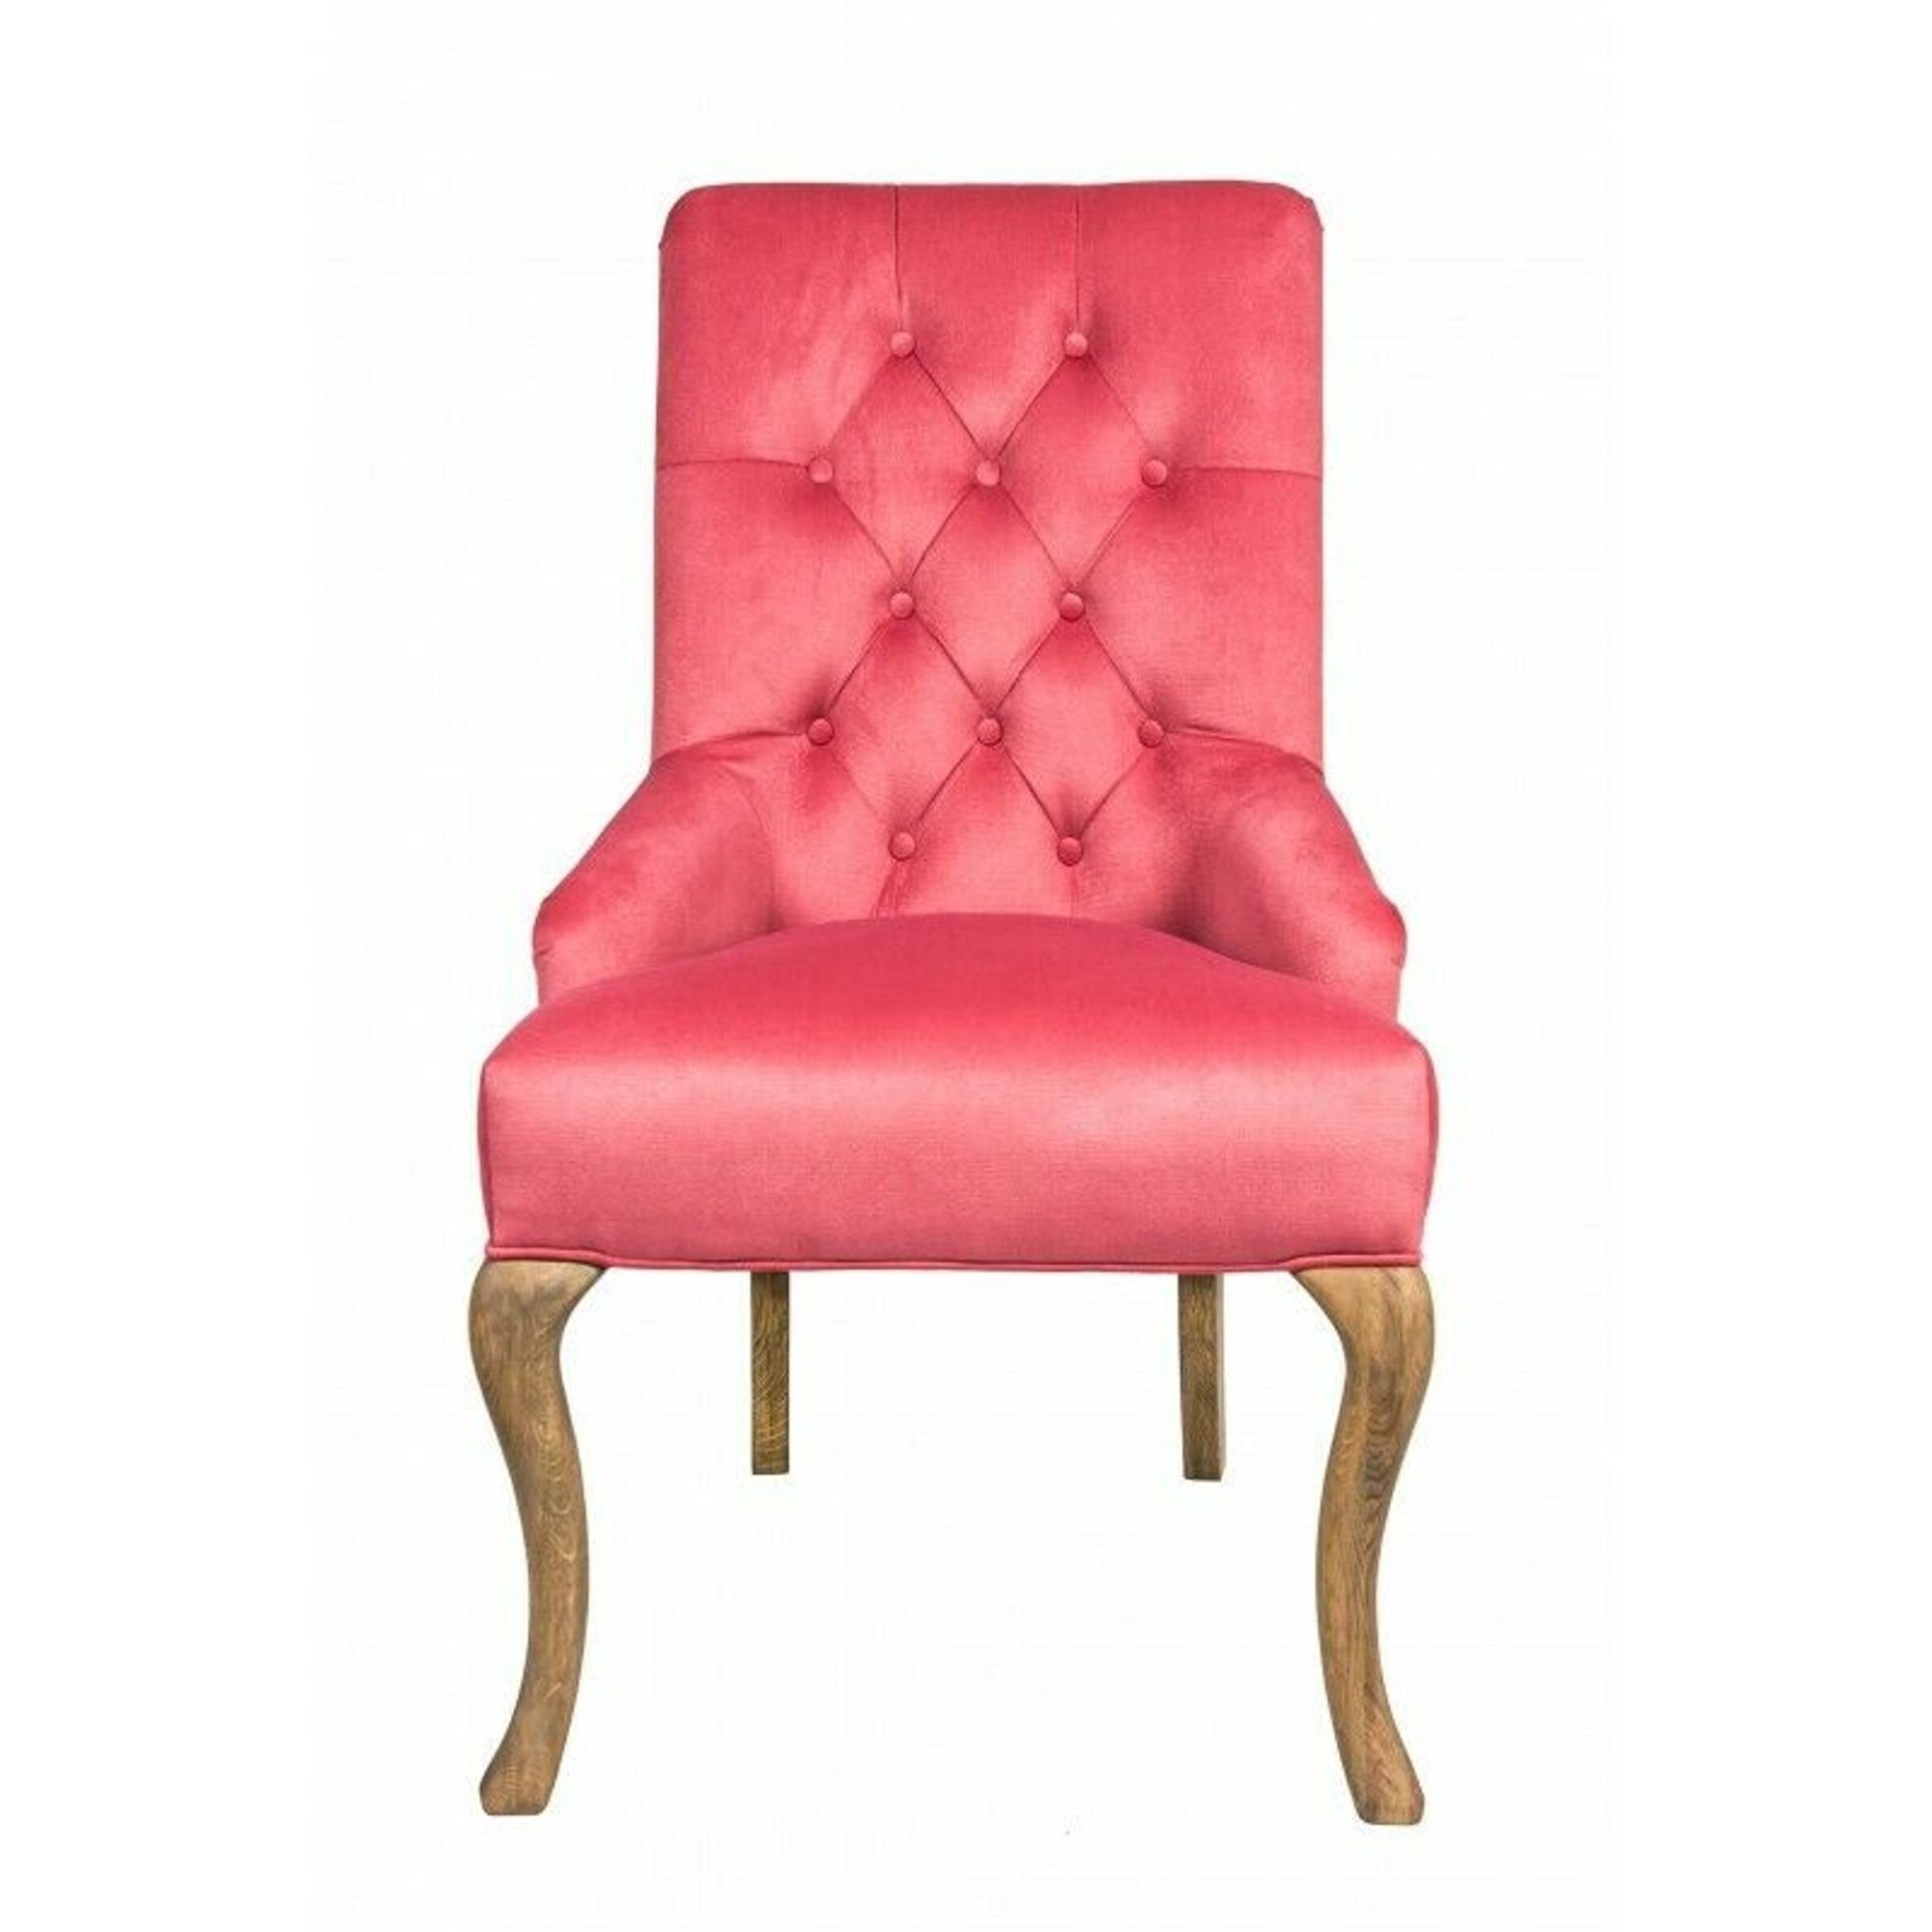 JVmoebel Stuhl, Design Bar Chesterfield Barhocker Sessel Stuhl Hocker Tresen Textil Bar Chair Rosa